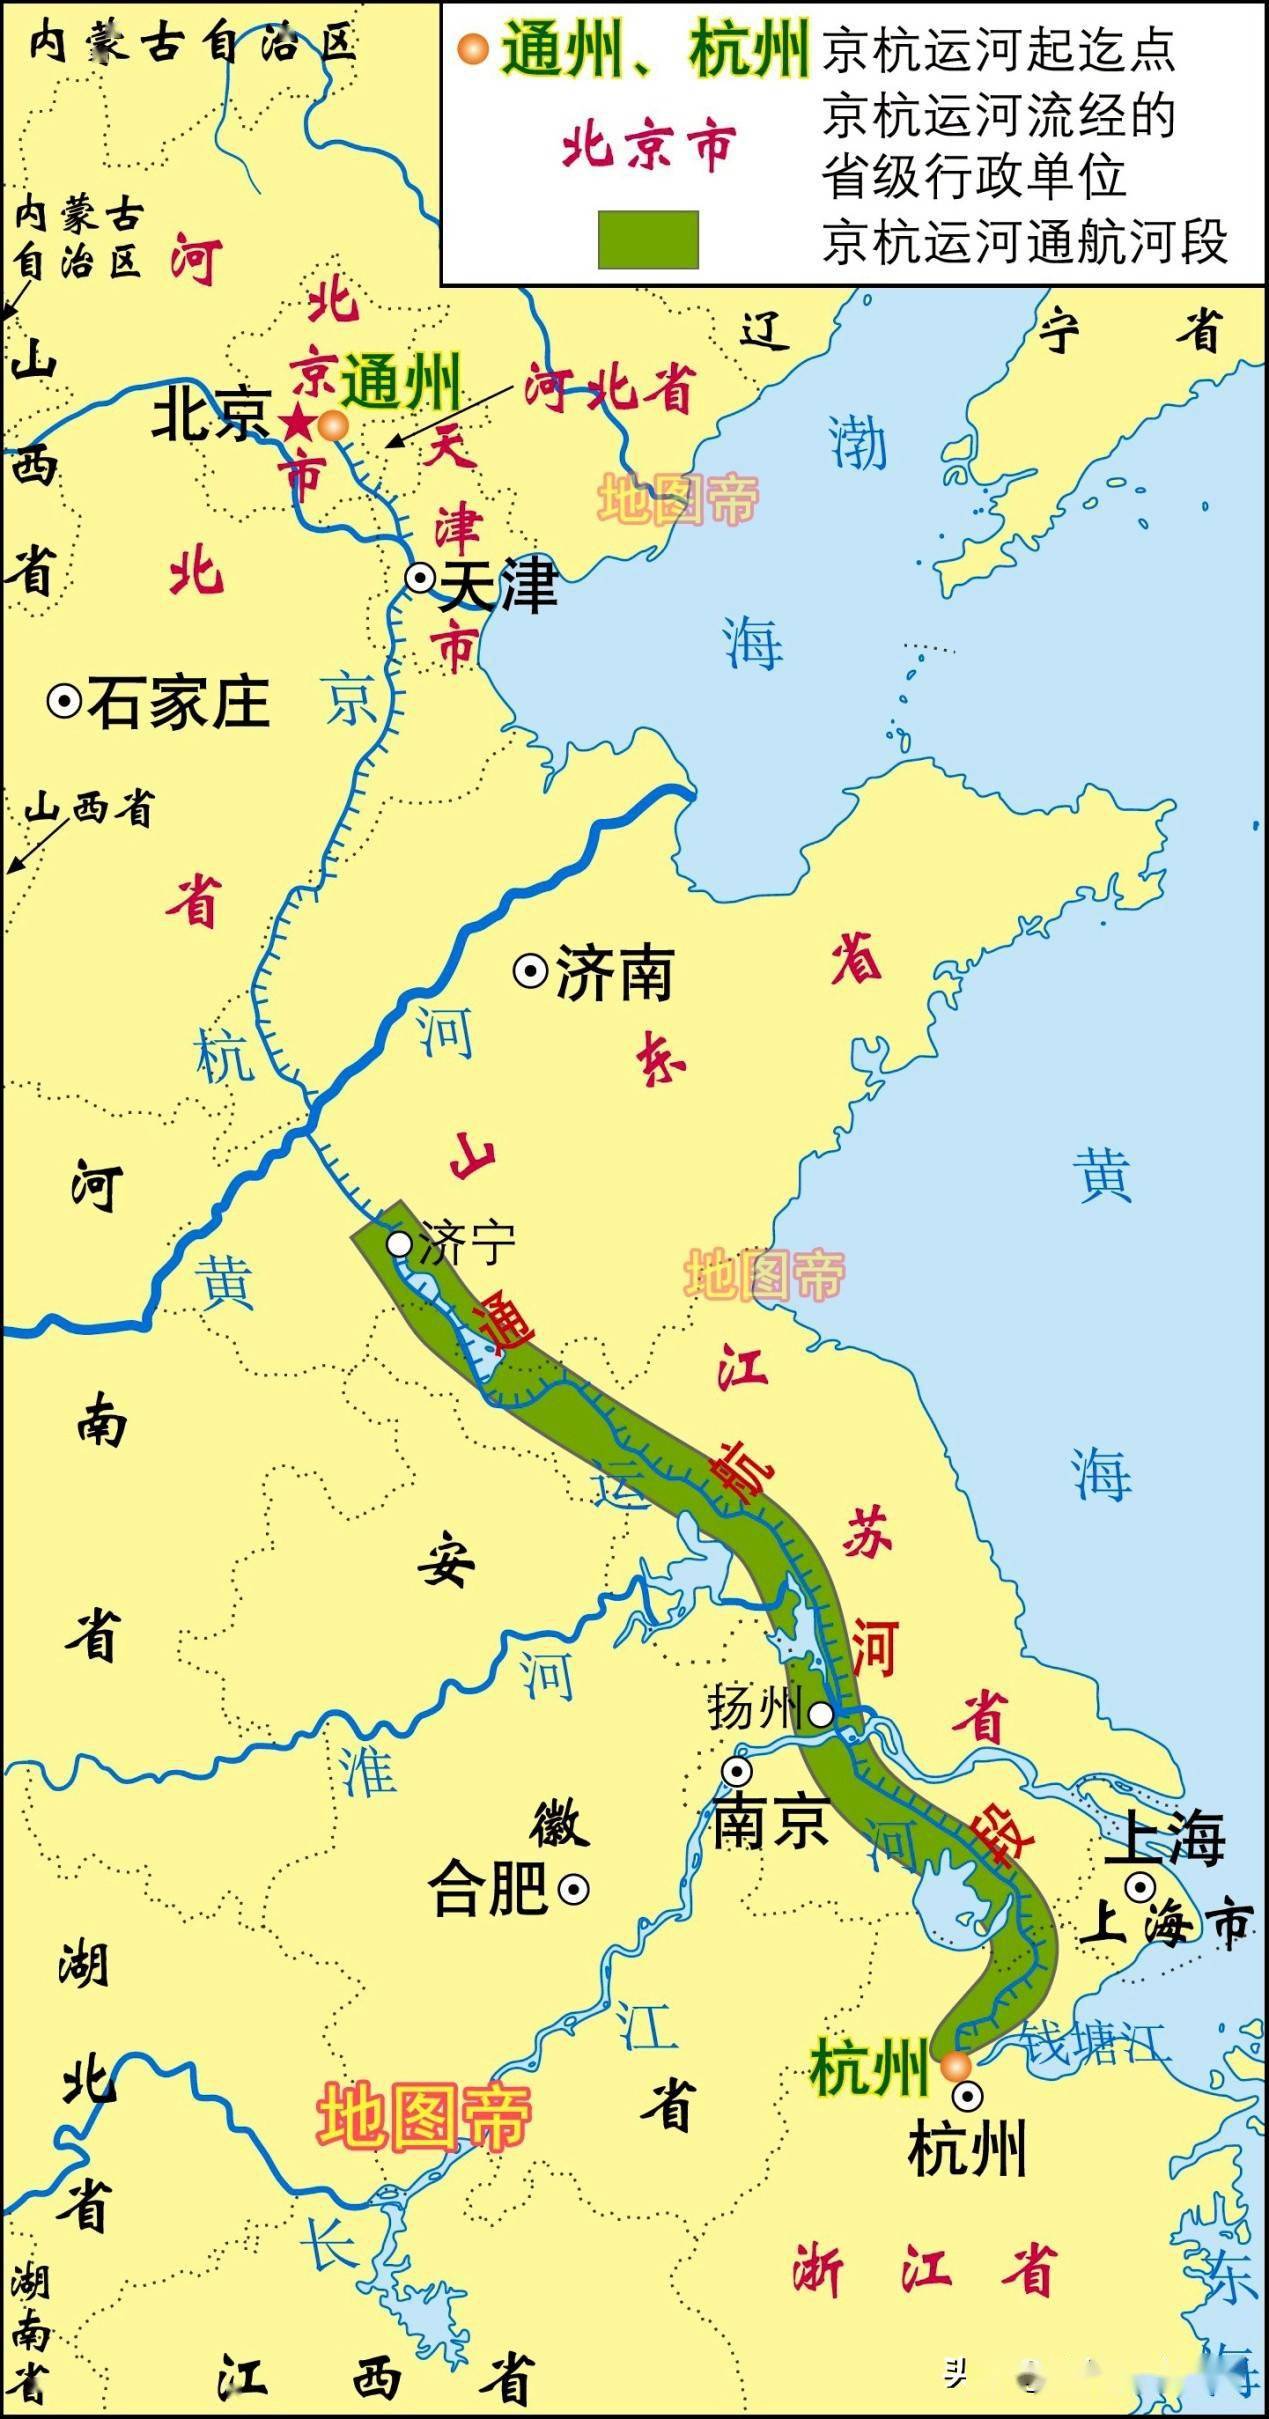 京杭大运河苏州段全览图片